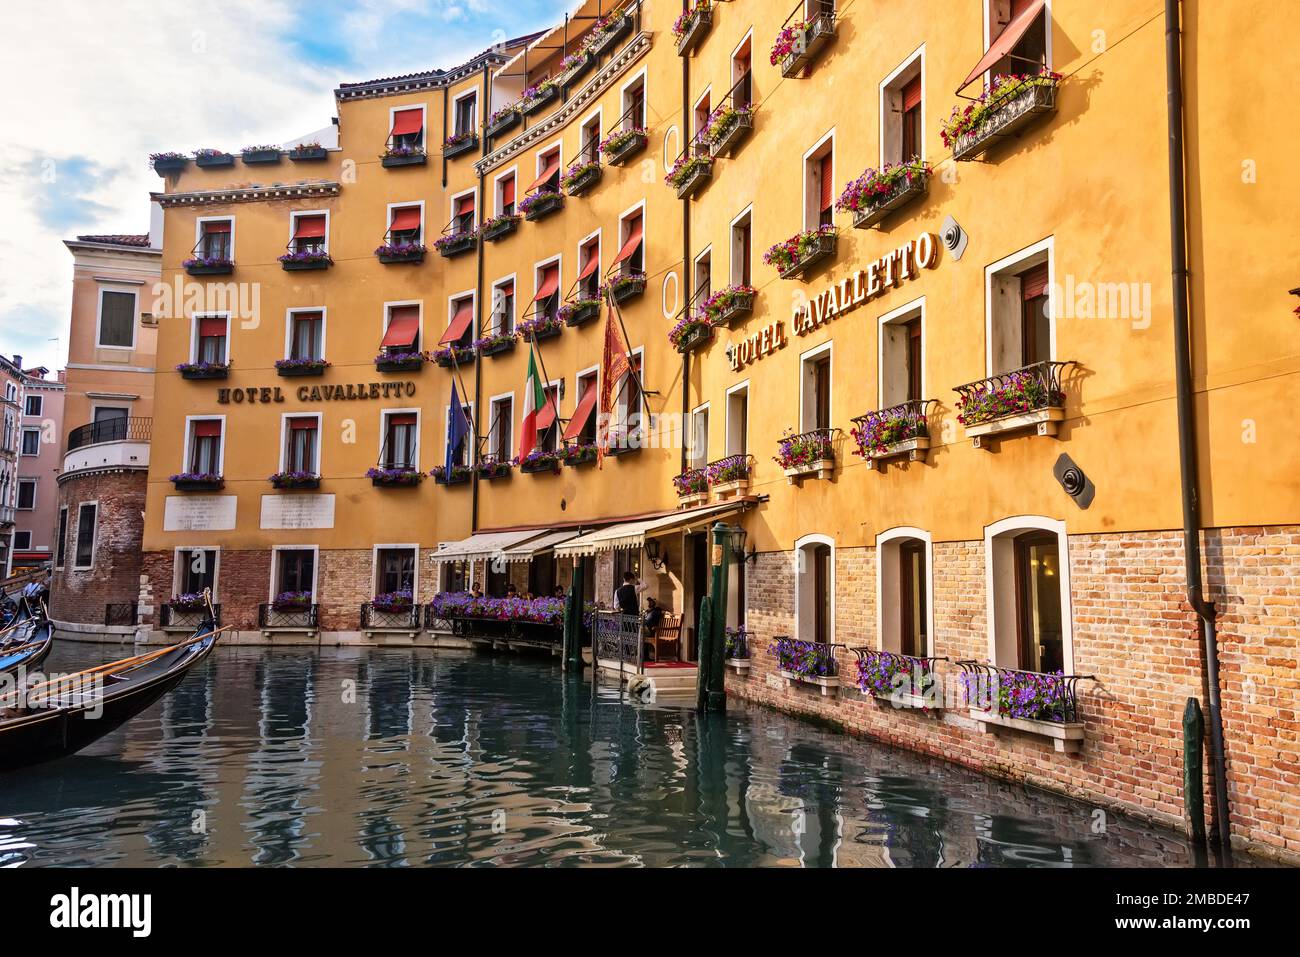 Venedig, Italien - 13. Juni 2016: Wasserkanal mit beliebtem Hotel, Hotel Cavalletto und Gondelfahrten für Gäste und Touristen in Venedig. Stockfoto